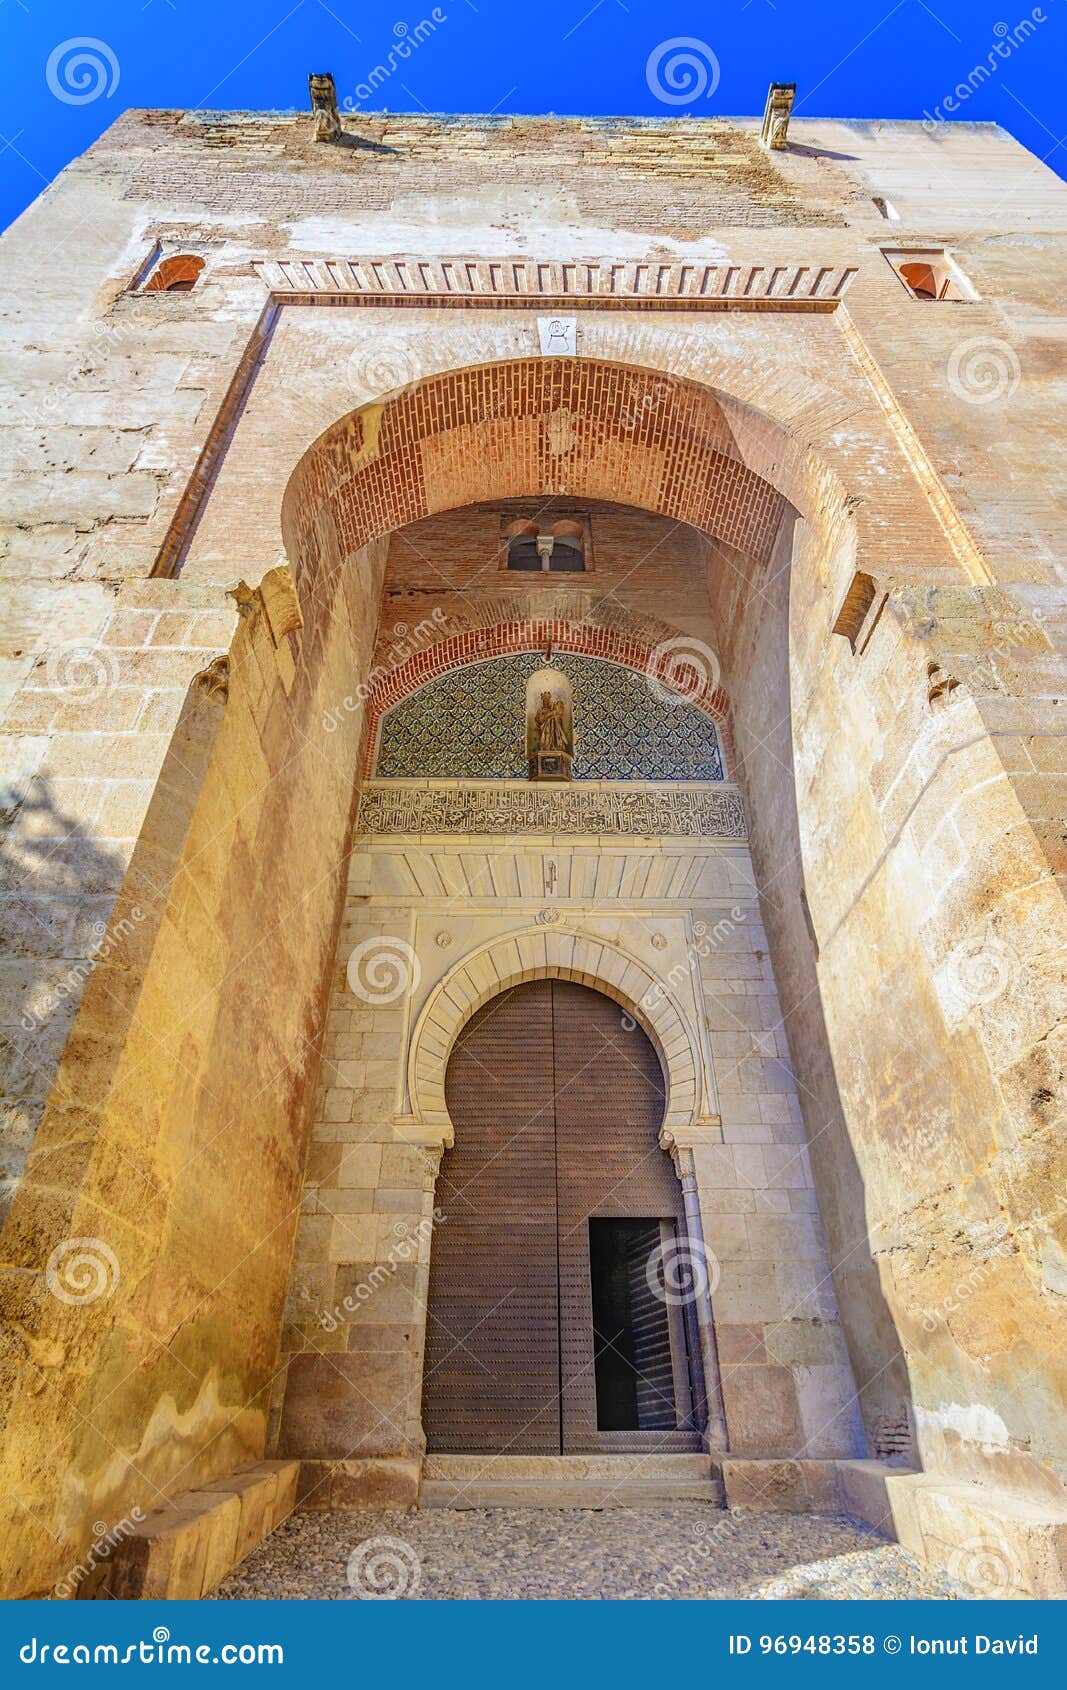 gate of justice,puerta de la justicia,alhambra, granada, spain,